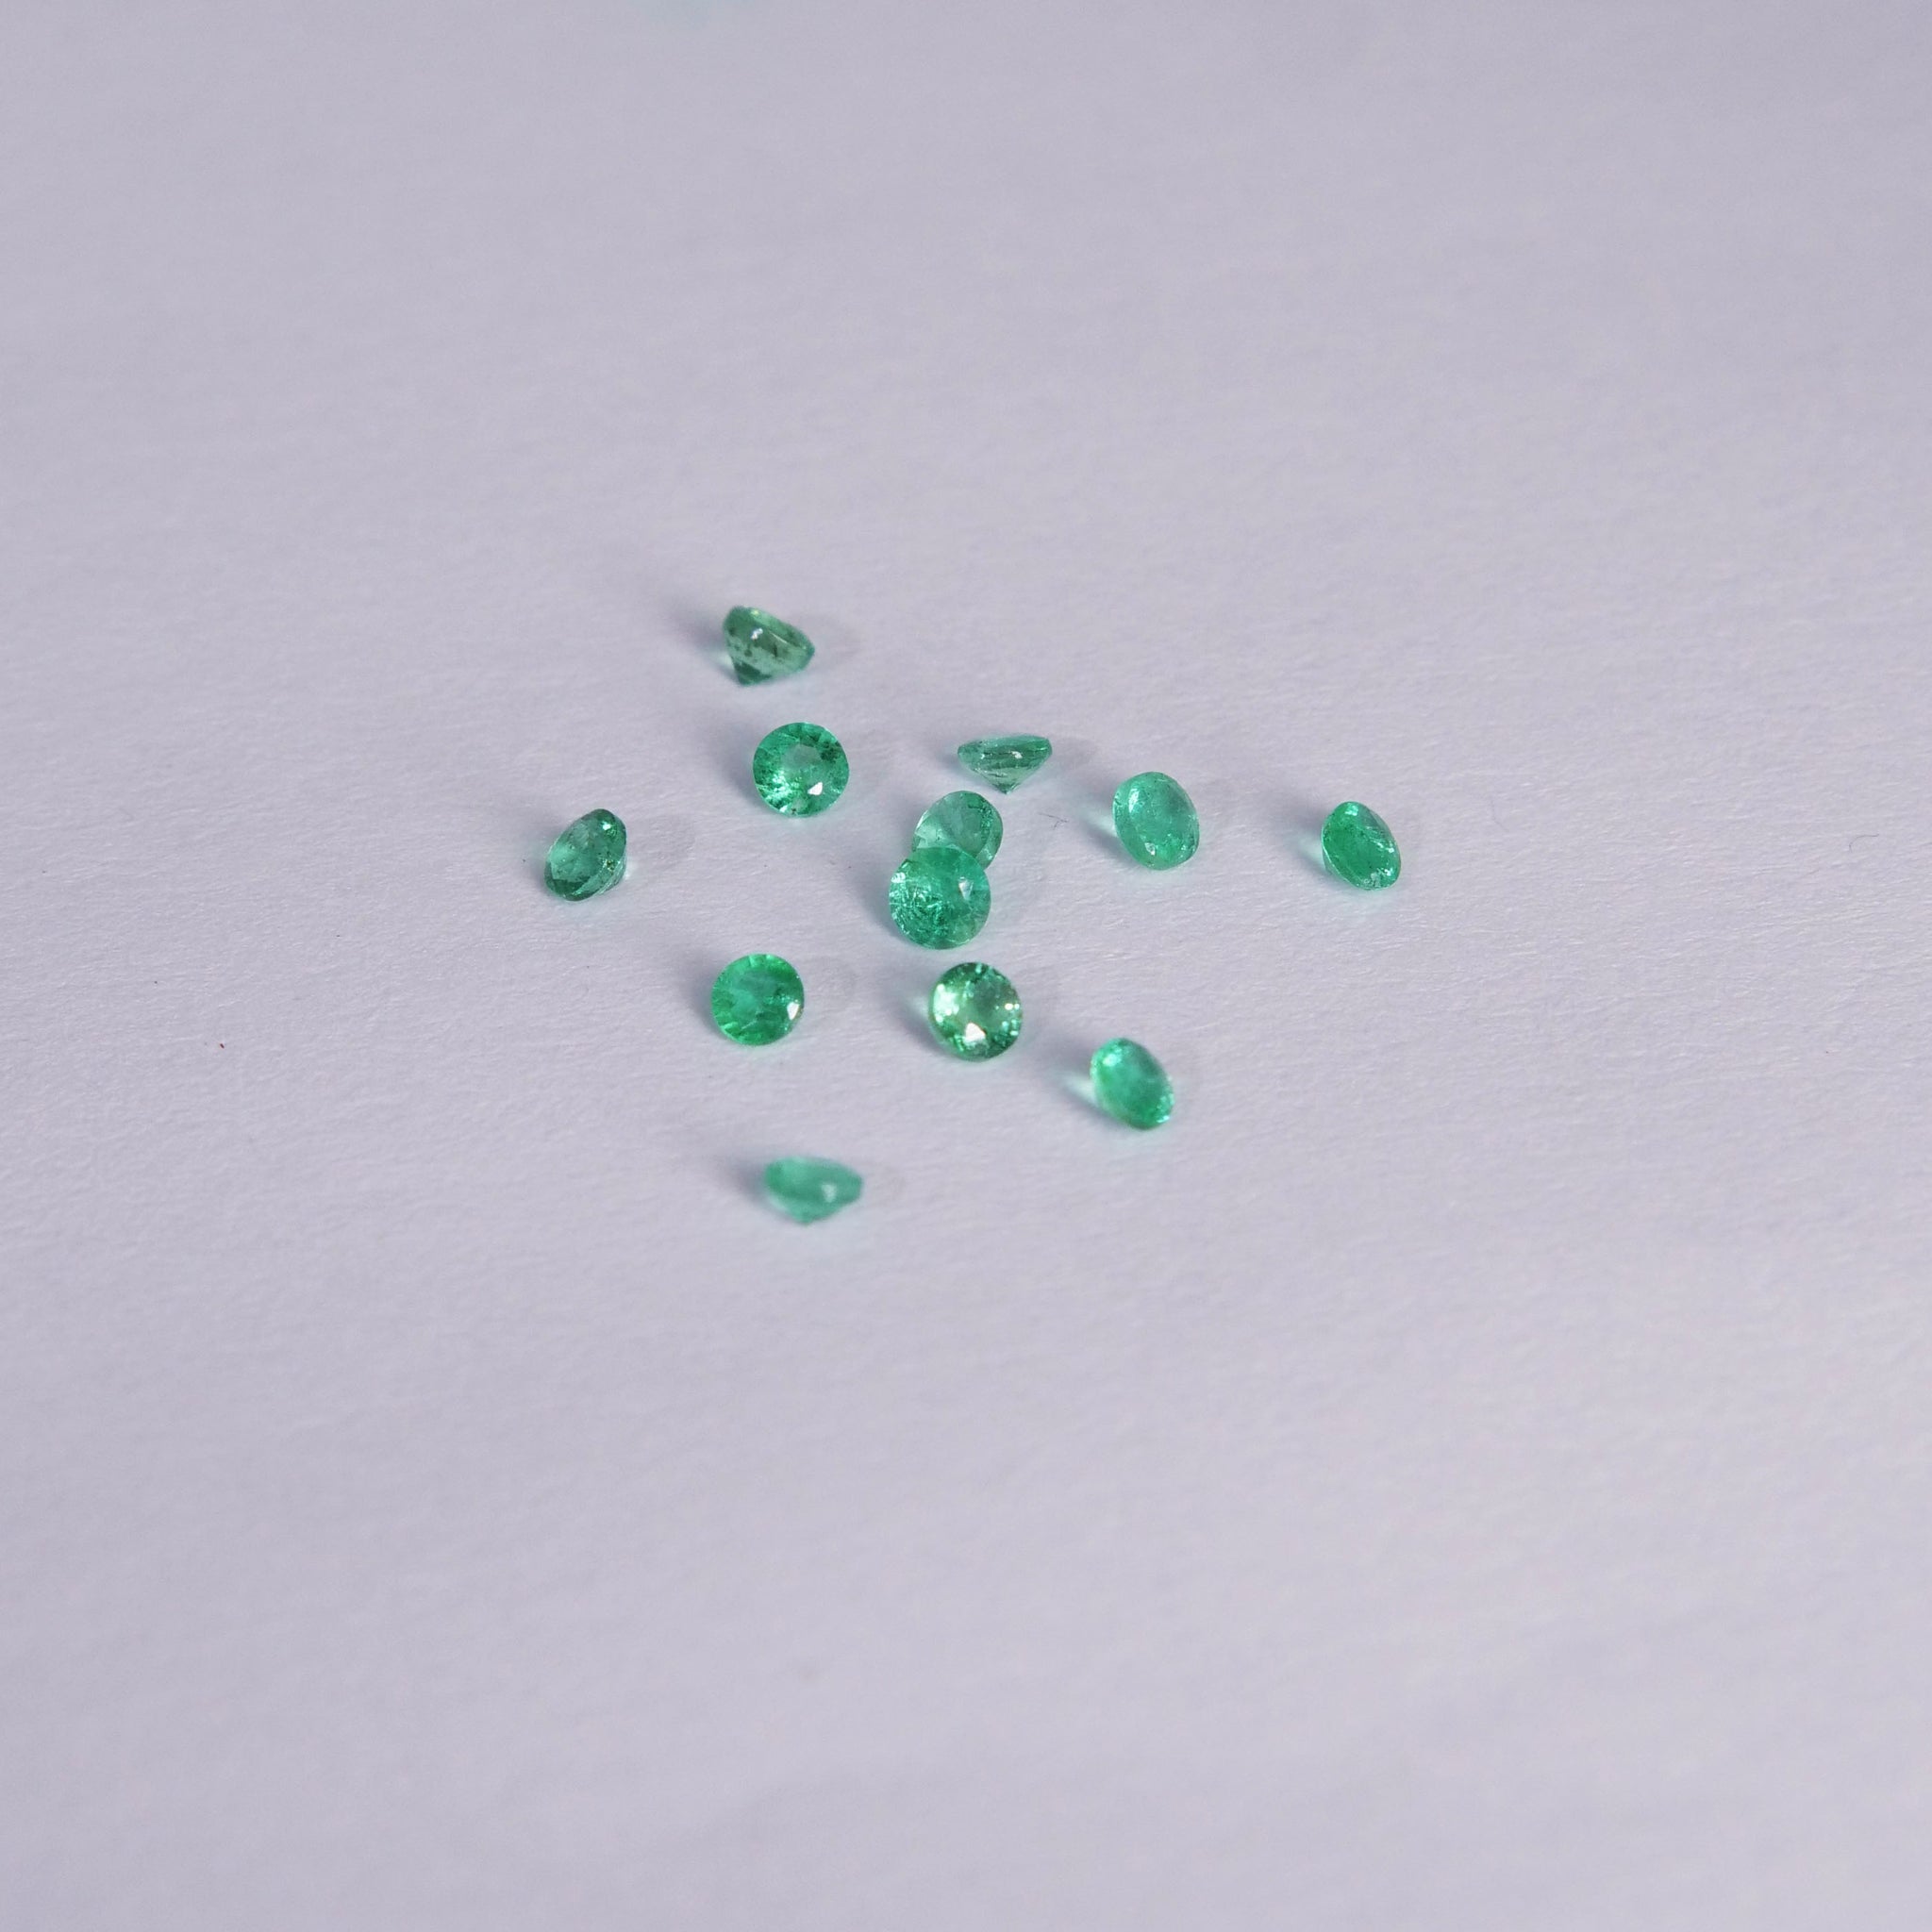 Emerald | natural, round cut 3mm, accent stone - Eden Garden Jewelry™